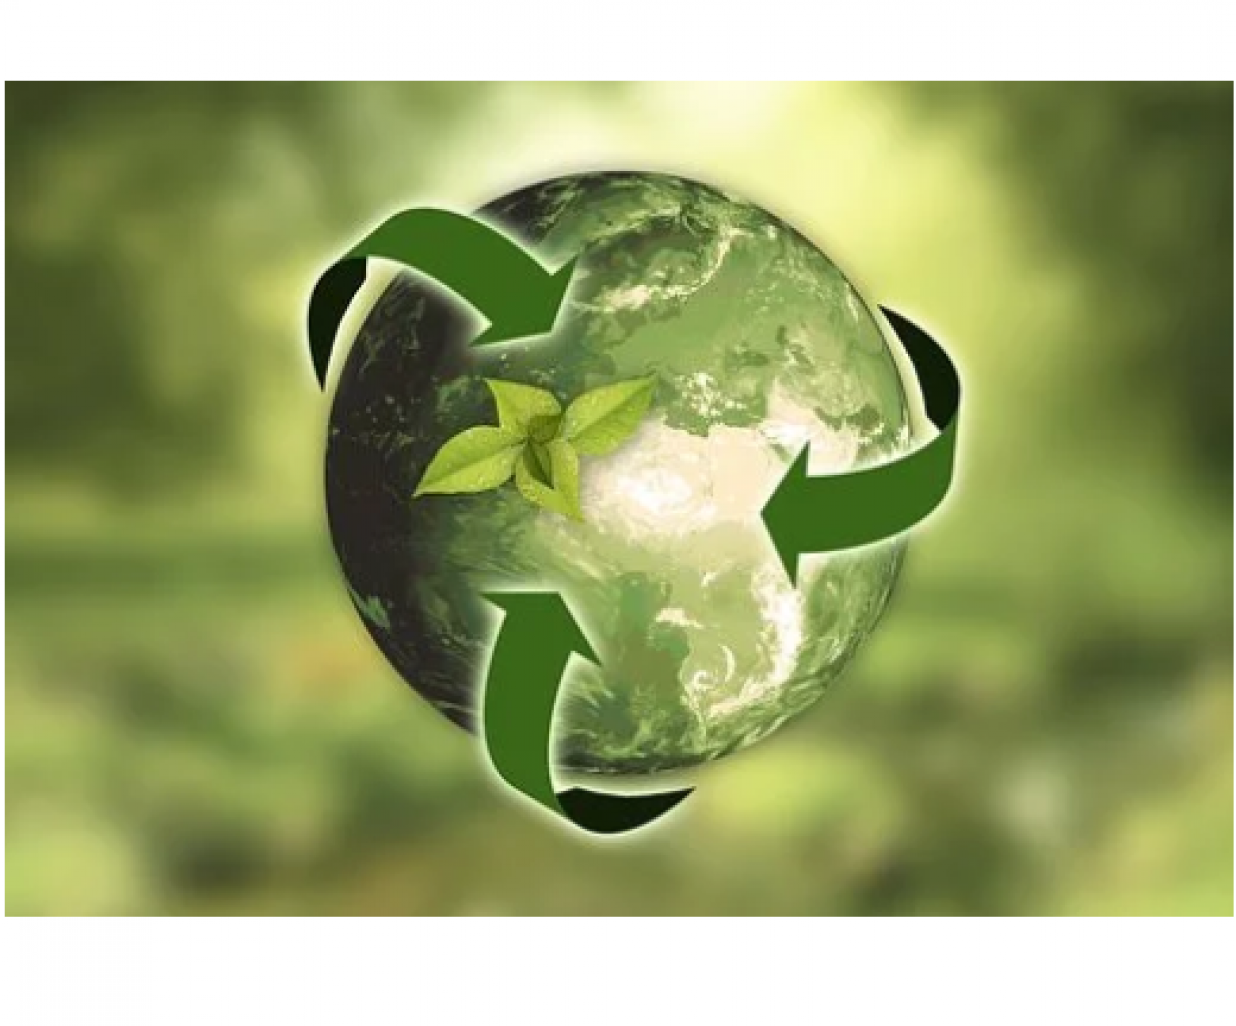 Le recyclage, la lutte contre le gaspillage alimentaire, l’obsolescence programmée, autant de sujets présents dans la loi sur le gaspillage et l’économie circulaire. 

